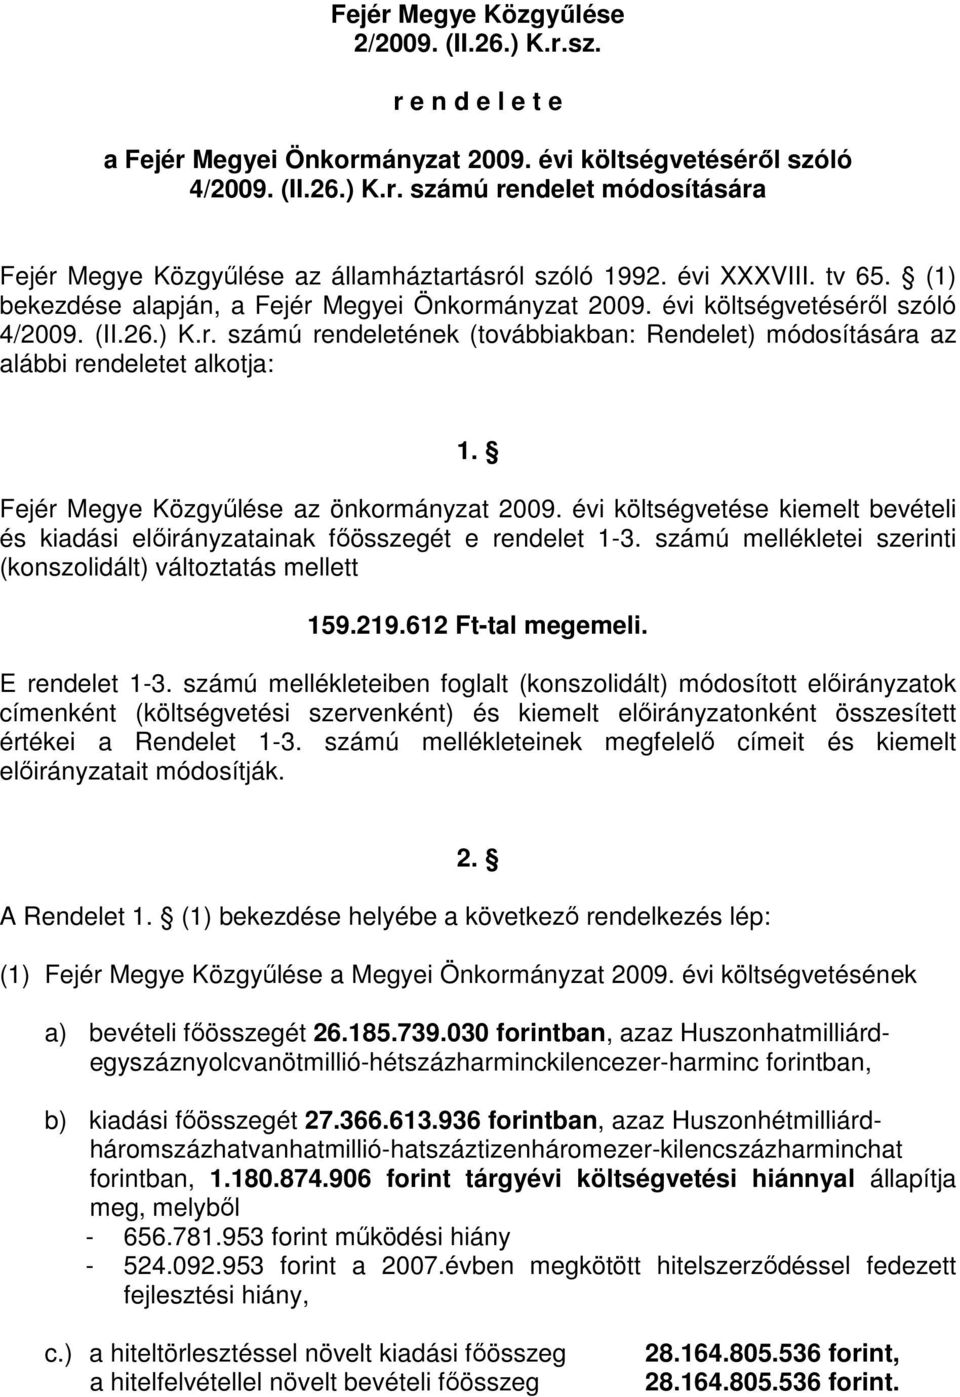 Fejér Megye Közgyőlése az önkormányzat 2009. évi költségvetése kiemelt bevételi és kiadási elıirányzatainak fıösszegét e rendelet 1-3.